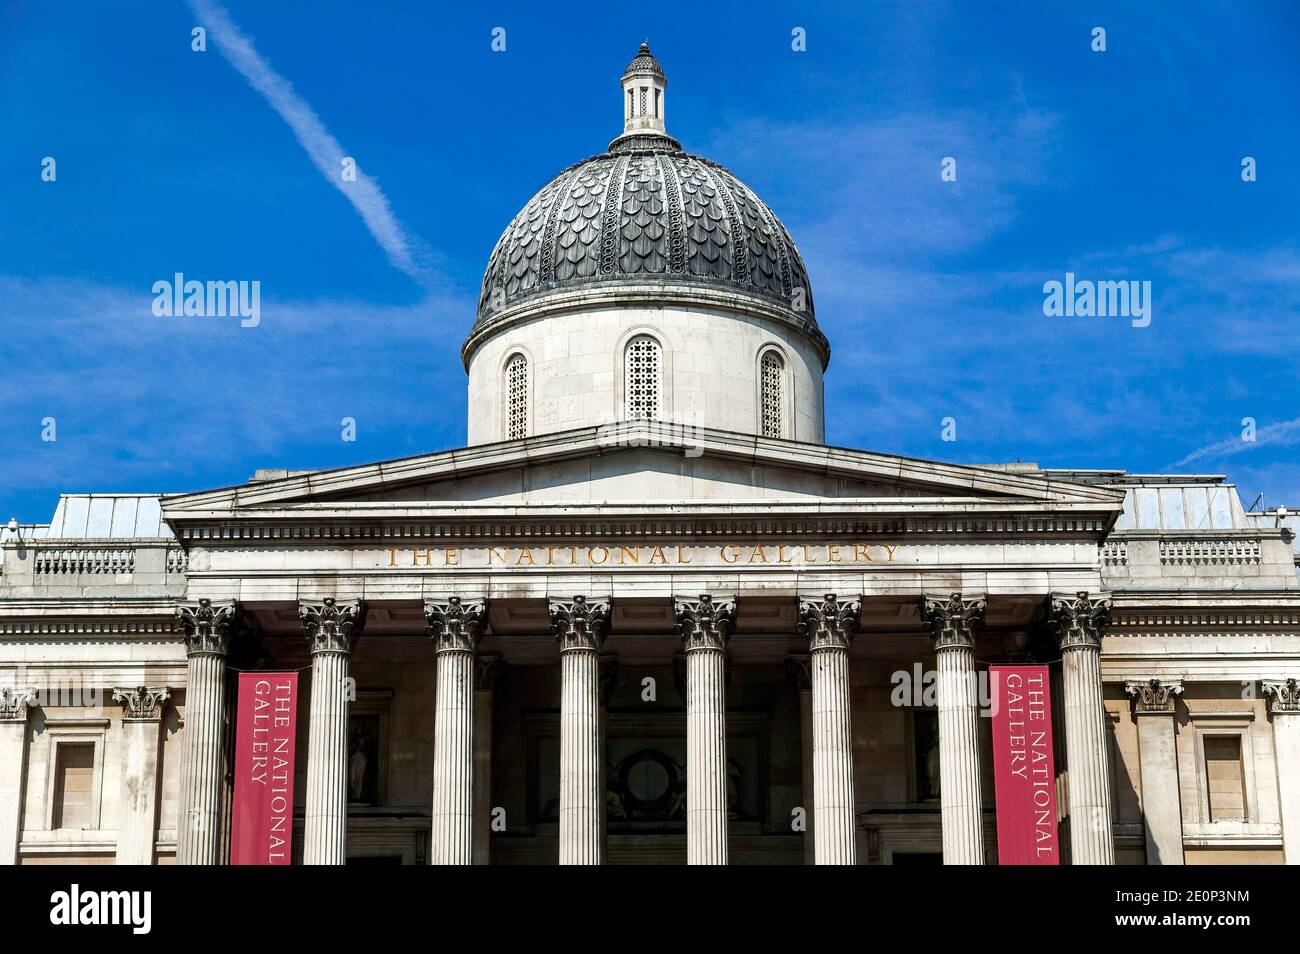 Londra, UK, 26 agosto 2008 : la galleria d'arte della National Gallery in Trafalgar Square, che è una popolare destinazione turistica, punto di riferimento s Foto Stock